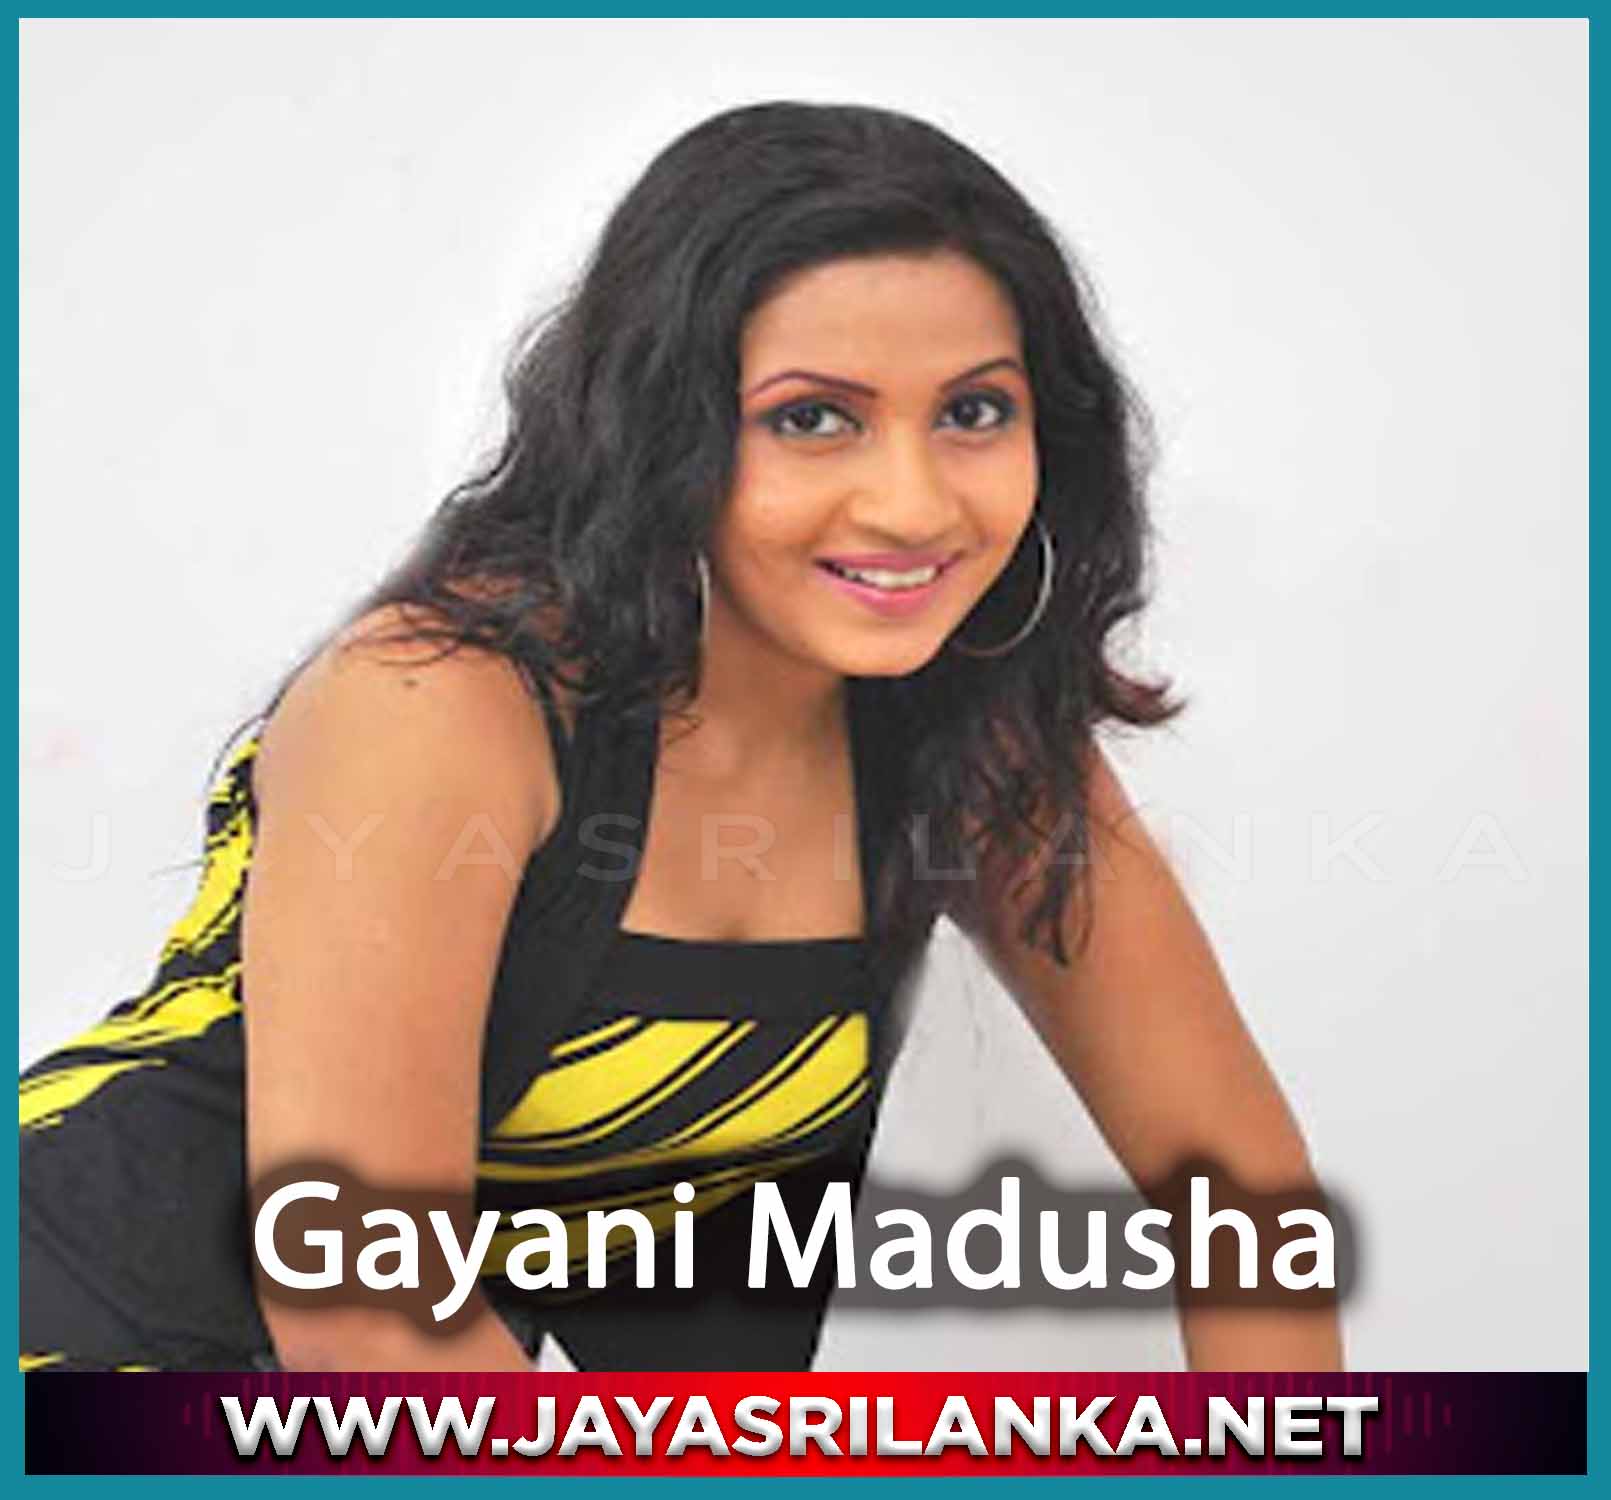 Dikkasada Pembareeda Man - Gayani Madusha mp3 Image